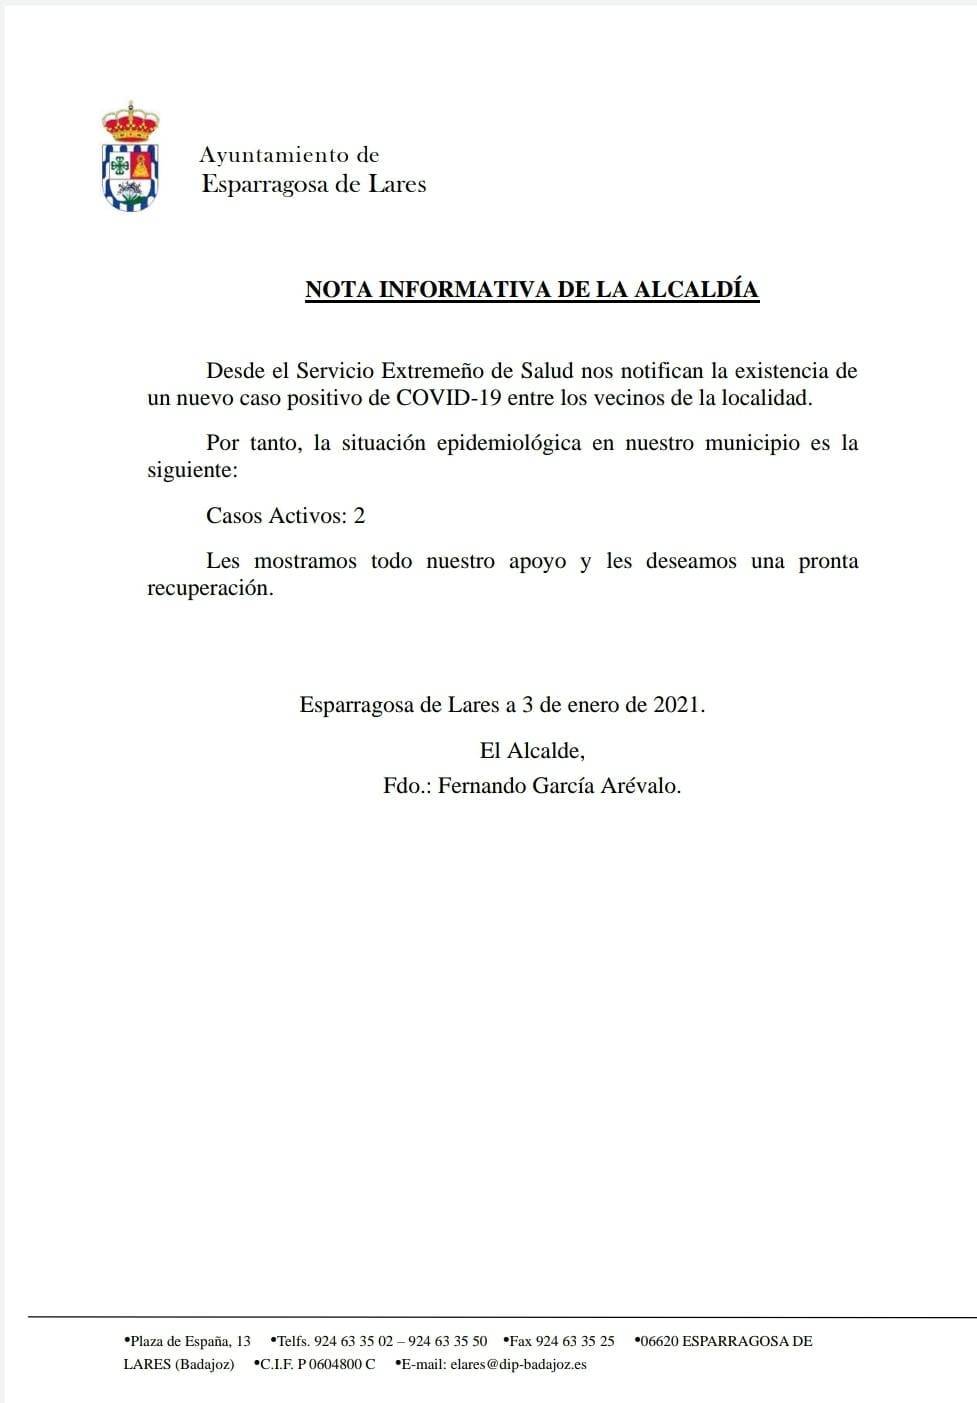 2 casos positivos activos de COVID-19 (enero 2021) - Esparragosa de Lares (Badajoz)